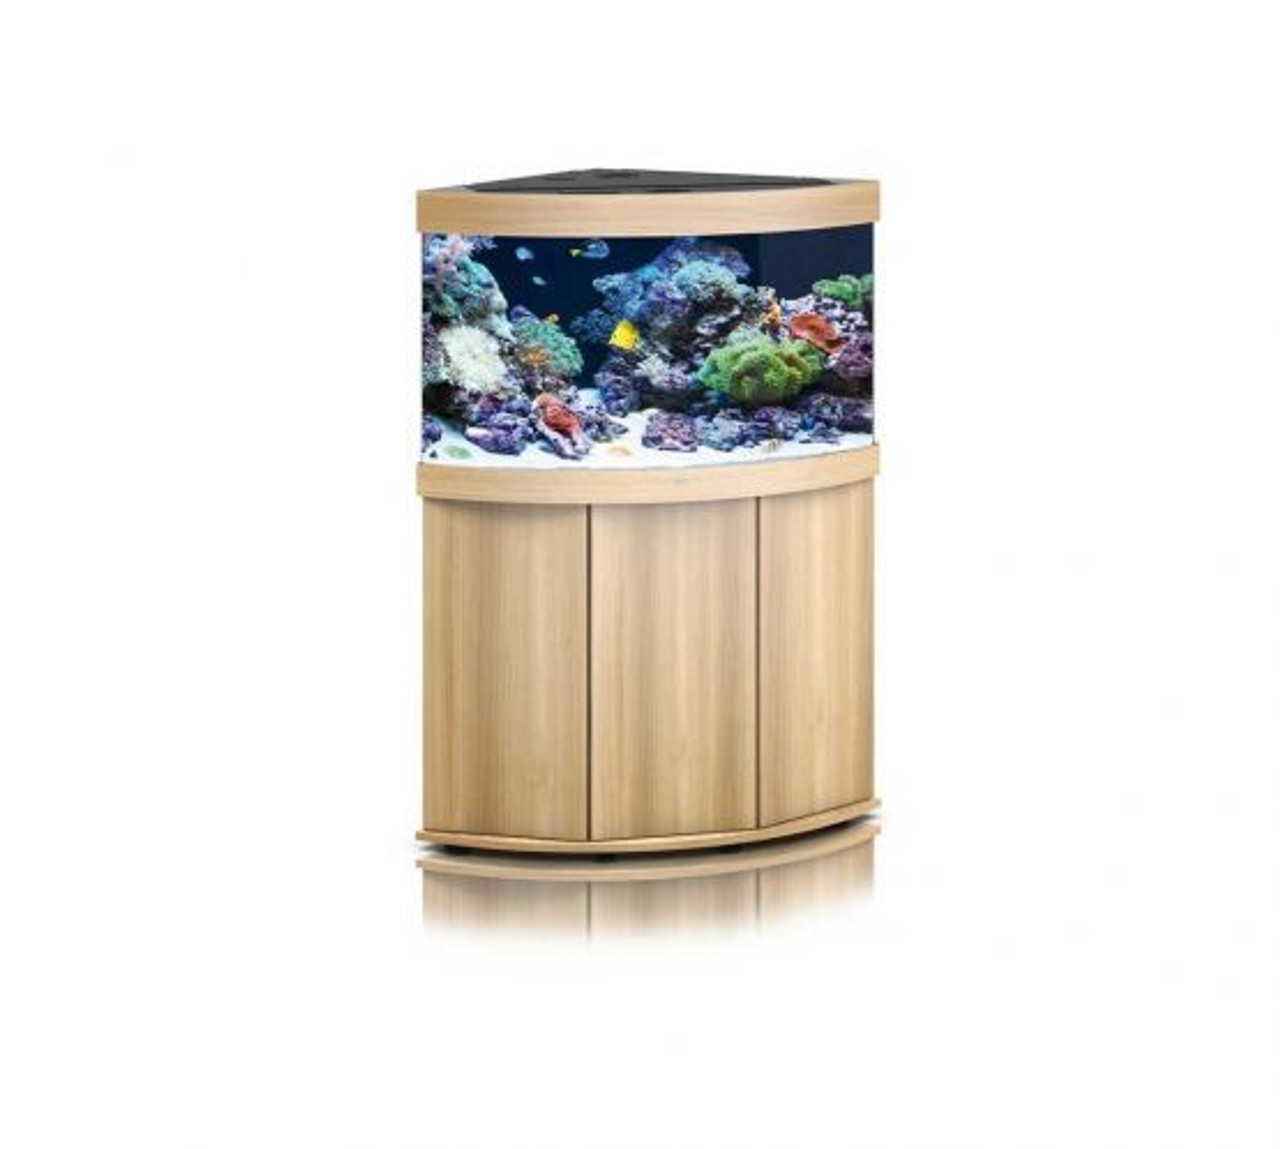 Skulle kabel Jeg tror, ​​jeg er syg Trigon 190 Light Wood | Juwel Marine Aquarium Kit | World of Water